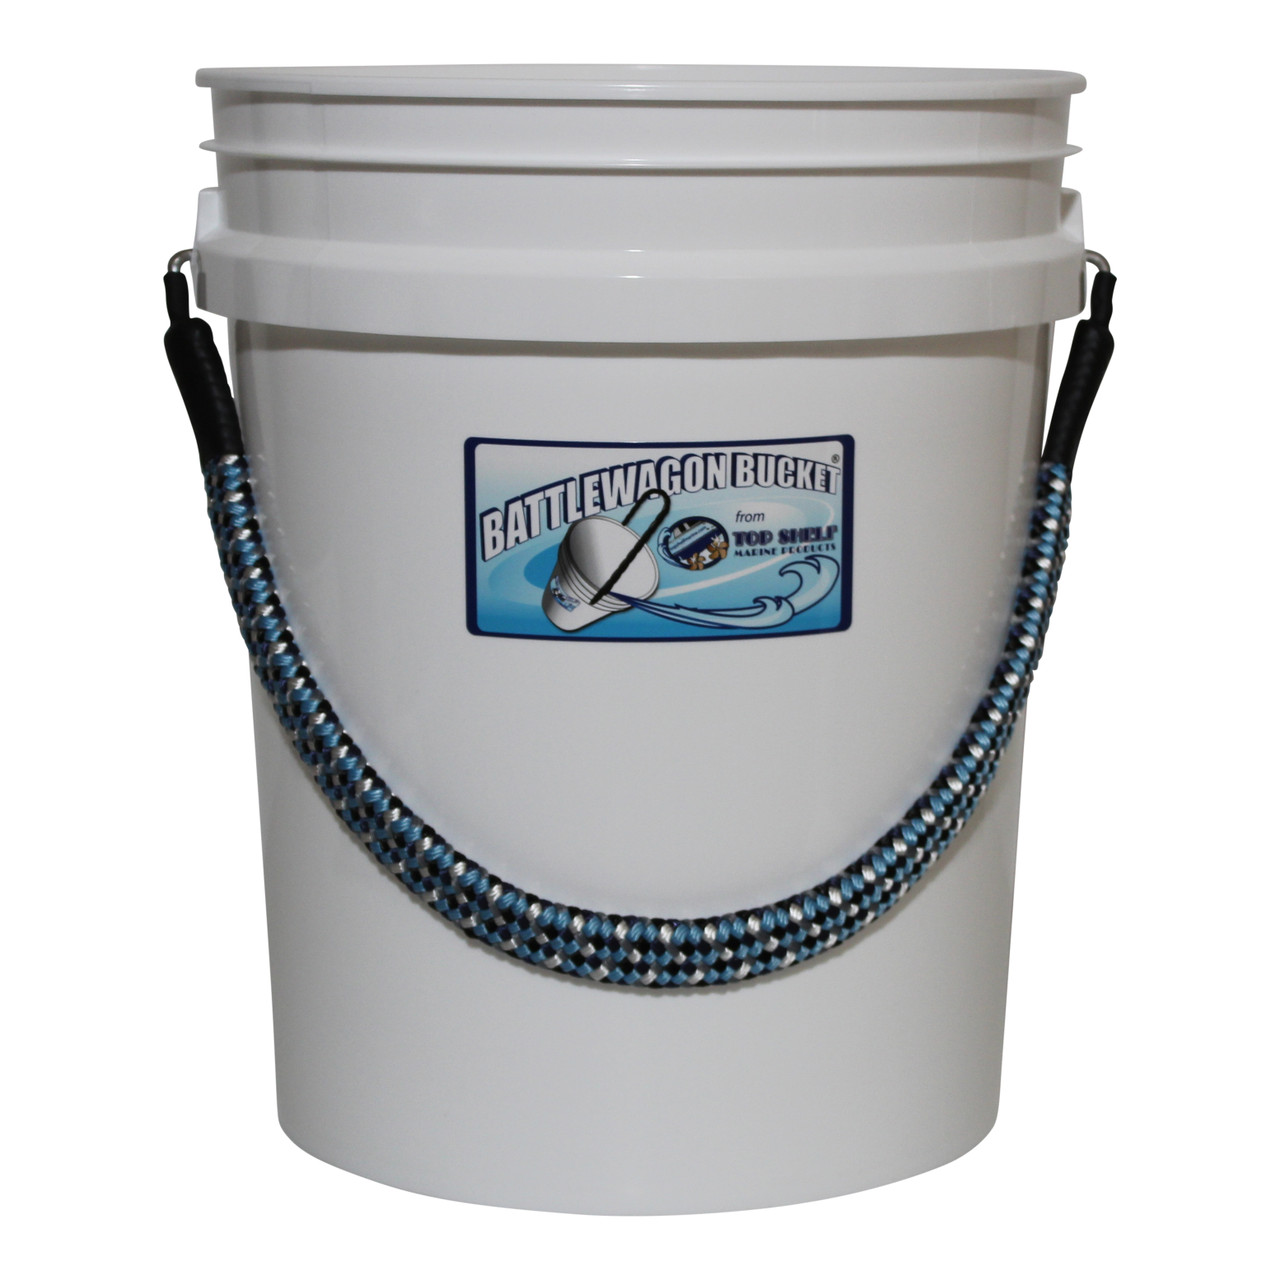 5-Gallon Bucket With Rope Handle, Angler Bucket